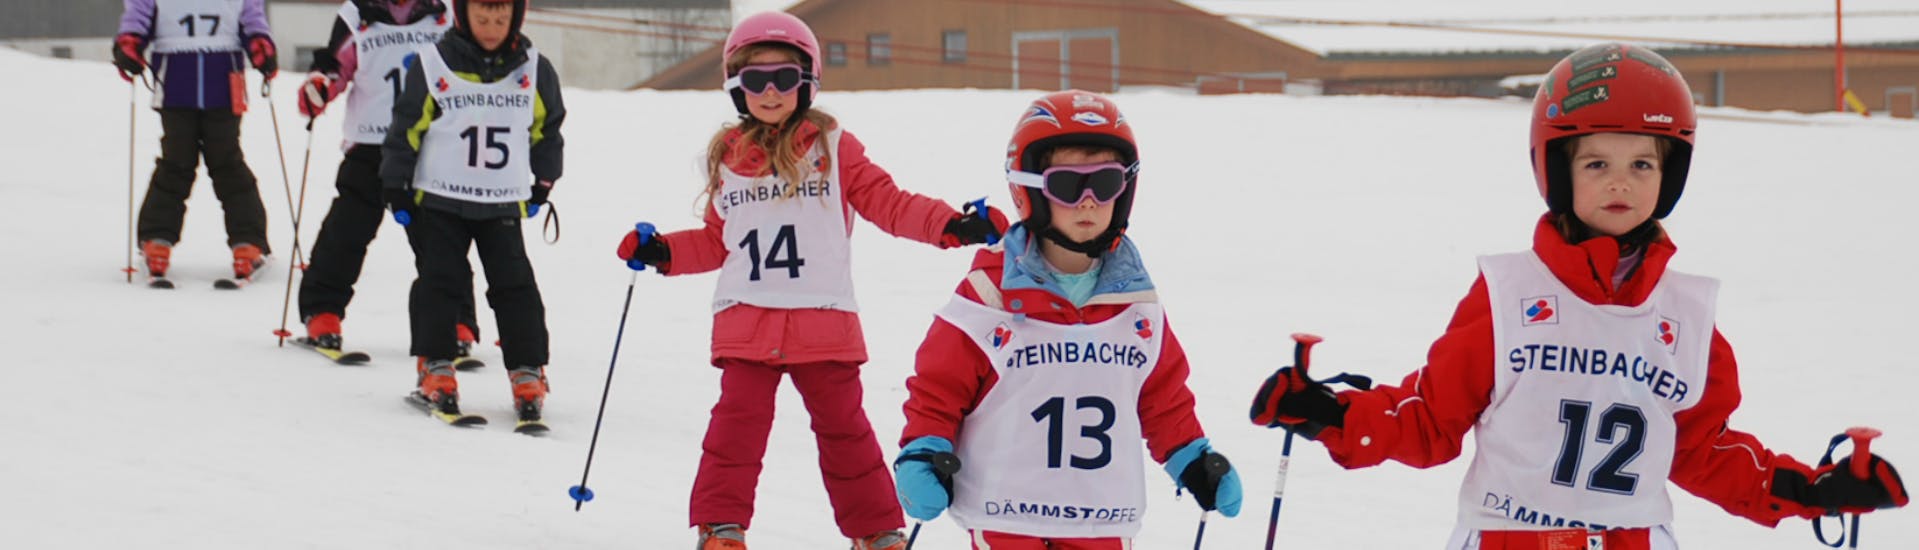 Cours de ski Enfants dès 4 ans pour Débutants avec Ski School Ski Total Kirchdorf.